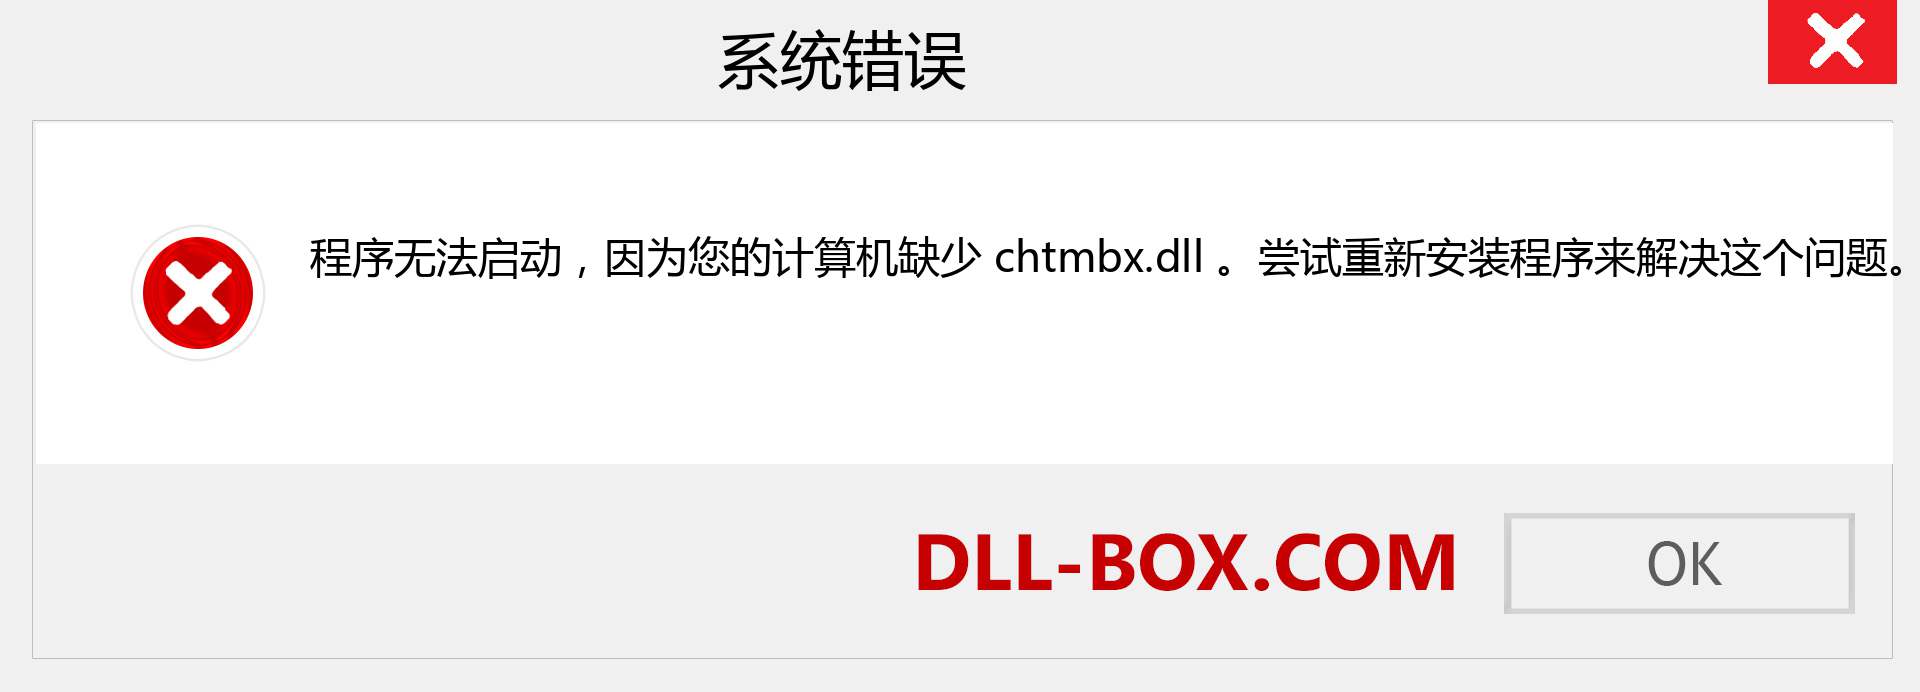 chtmbx.dll 文件丢失？。 适用于 Windows 7、8、10 的下载 - 修复 Windows、照片、图像上的 chtmbx dll 丢失错误